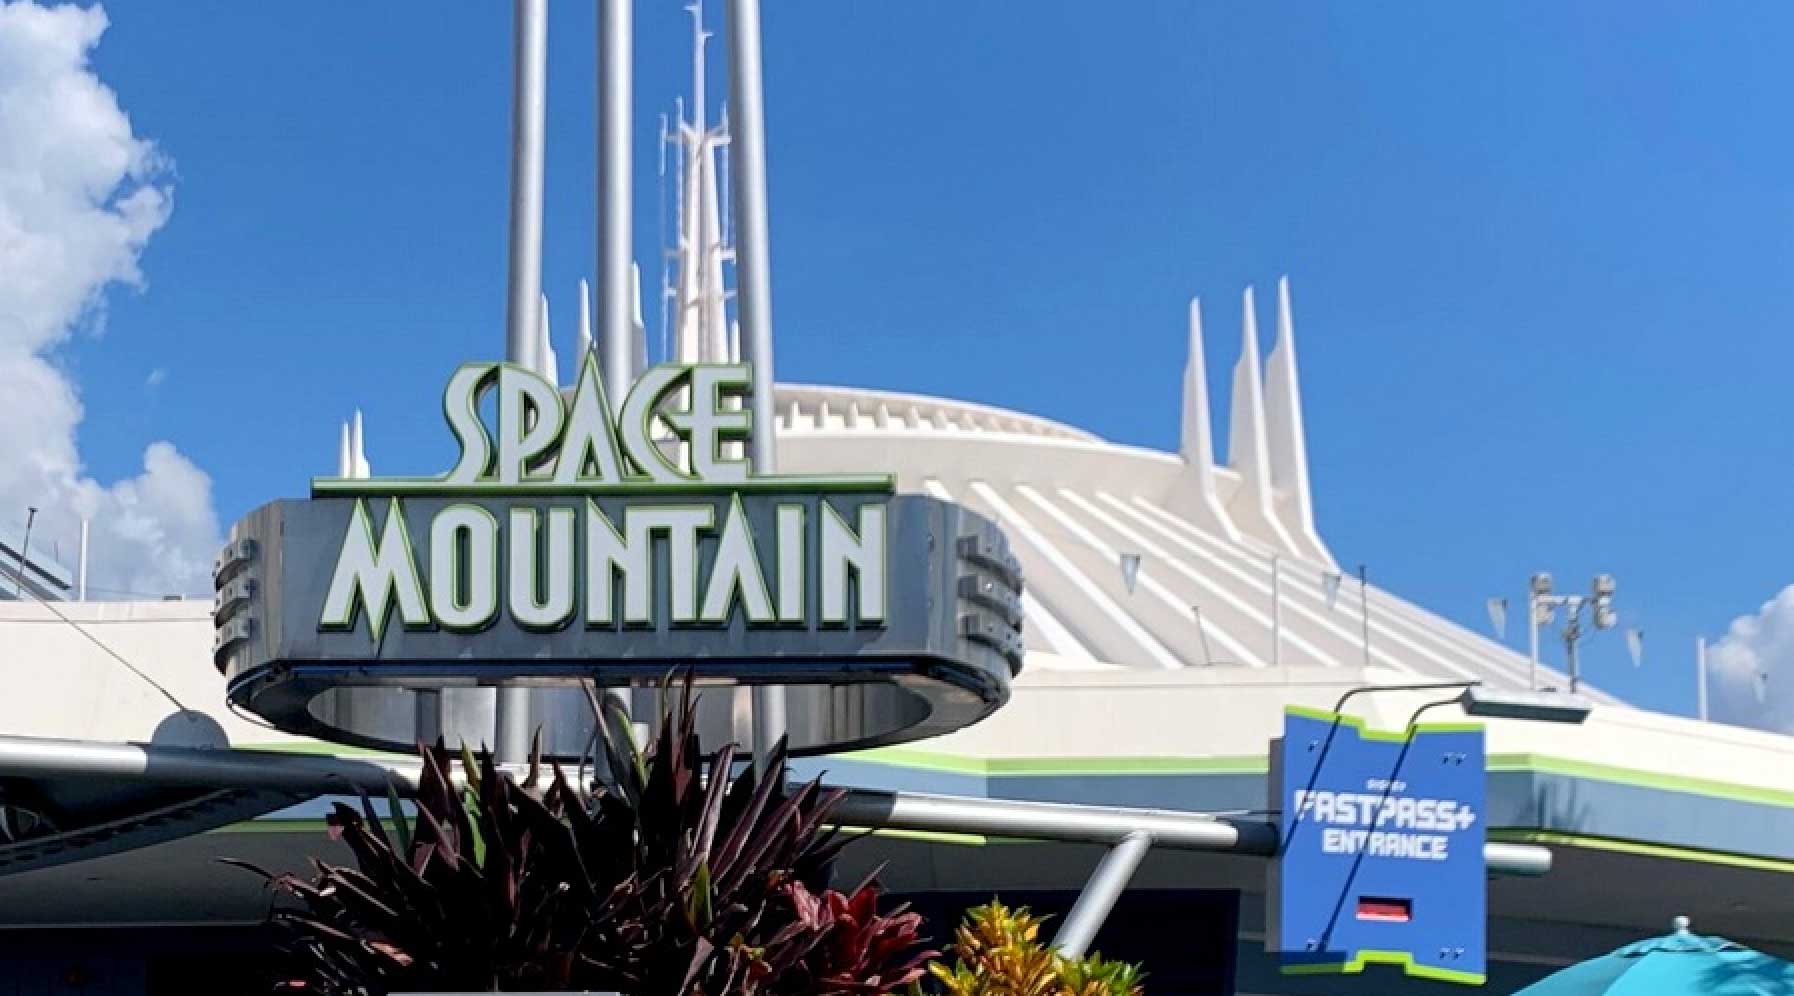 L'attrazione Disney Space Mountain arriva al cinema